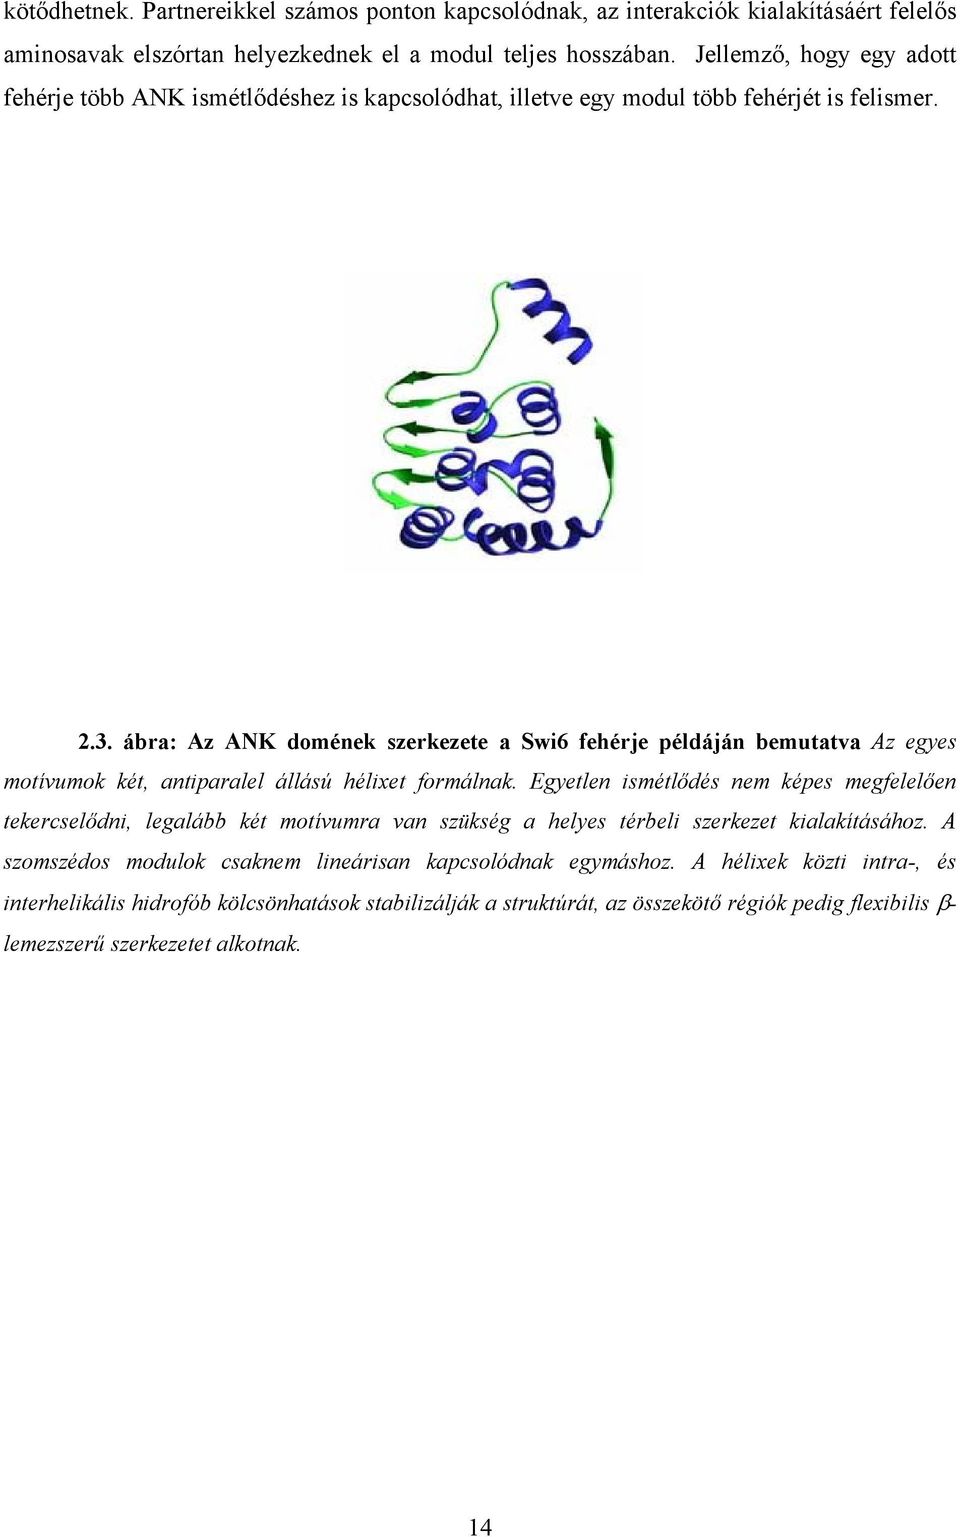 ábra: Az ANK domének szerkezete a Swi6 fehérje példáján bemutatva Az egyes motívumok két, antiparalel állású hélixet formálnak.